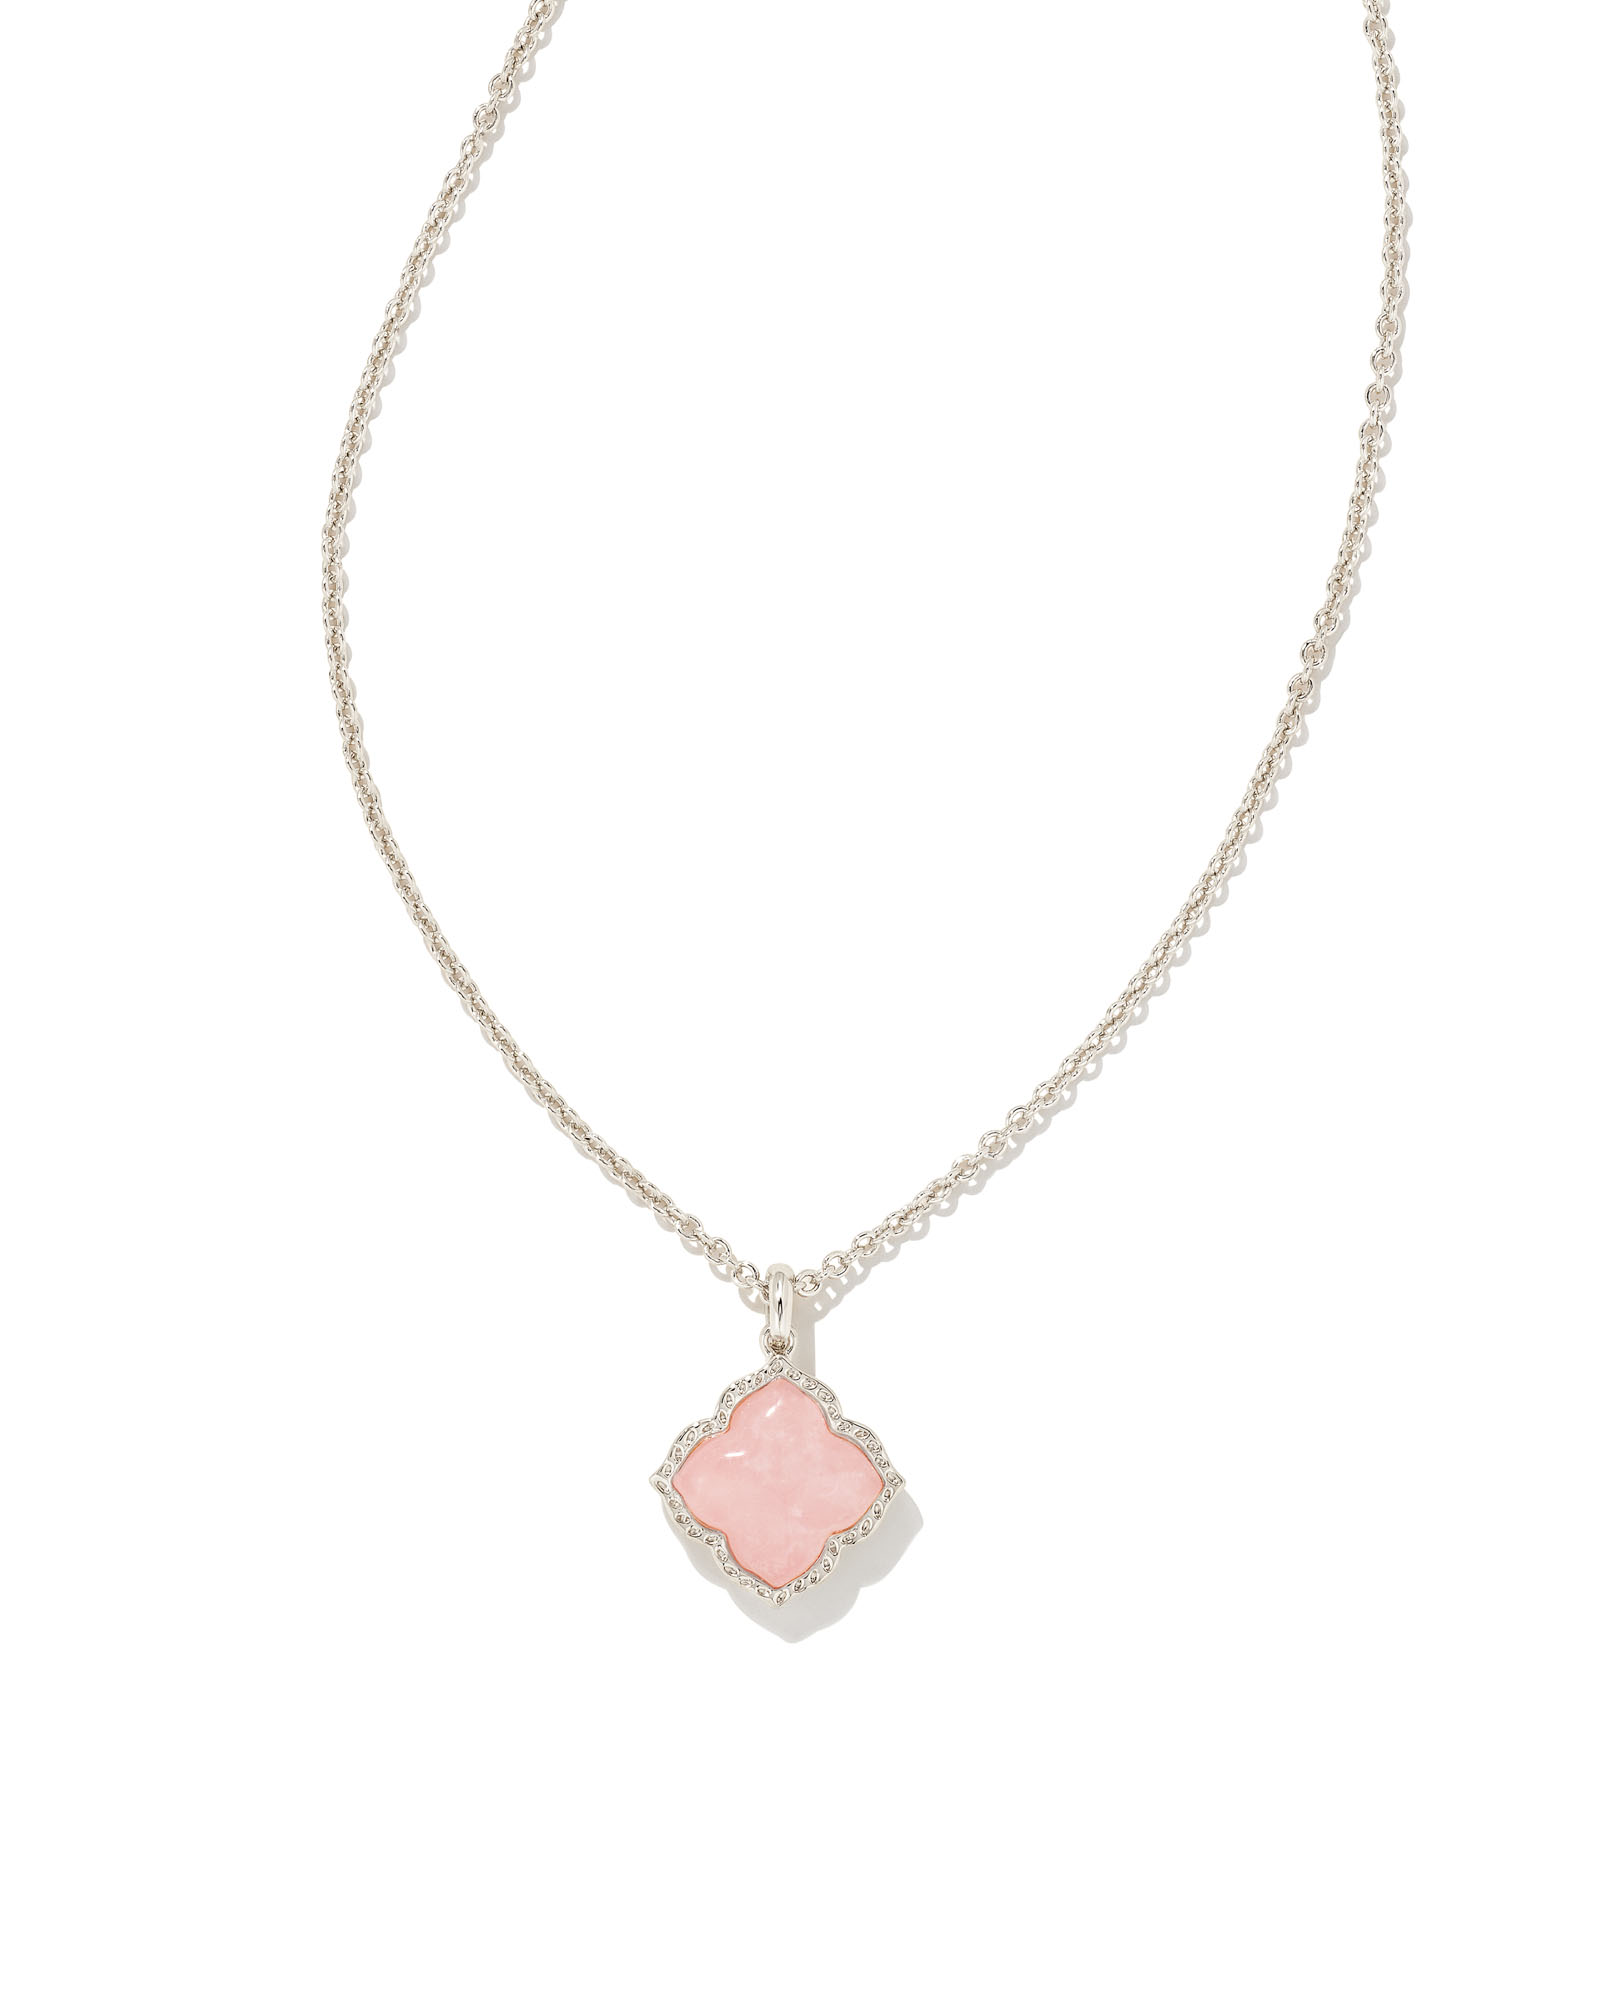 Mallory Silver Pendant Necklace in Rose Quartz | Kendra Scott